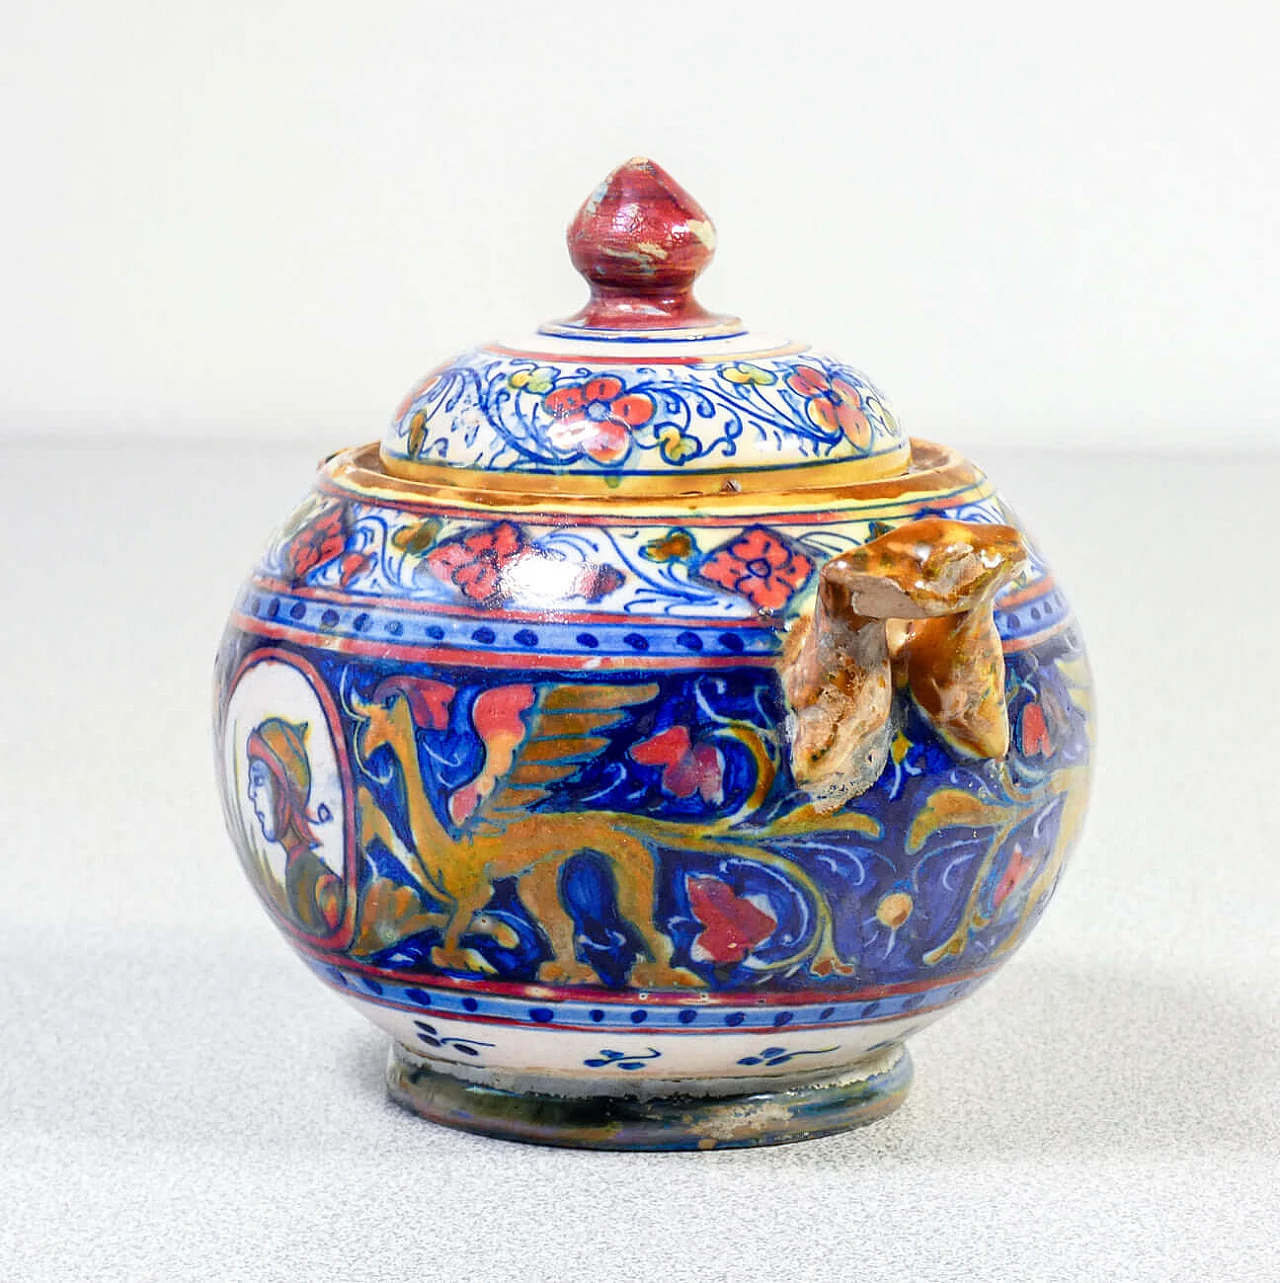 Ceramic teapot and sugar bowl by Mastro Giorgio Gualdo Tadino, early 20th century 12